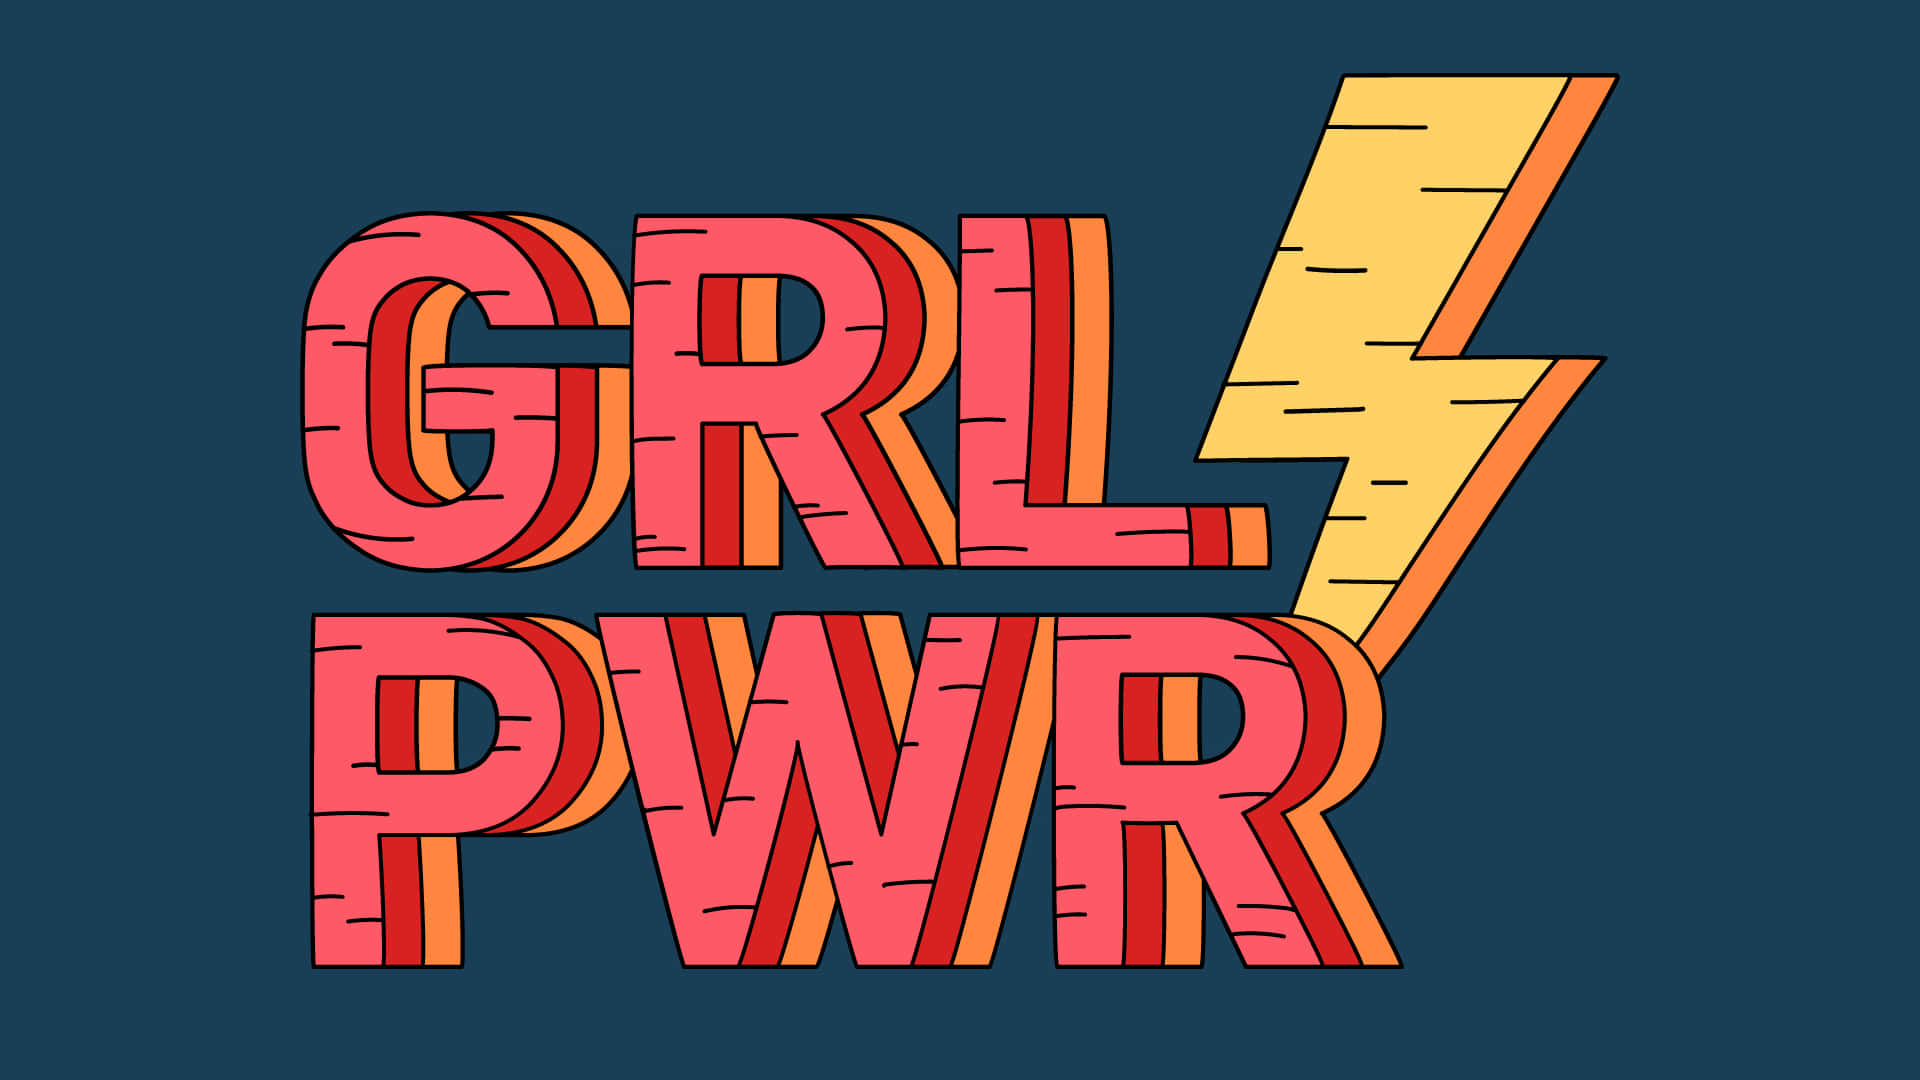 Girl Power Feminist Slogan Illustration Wallpaper